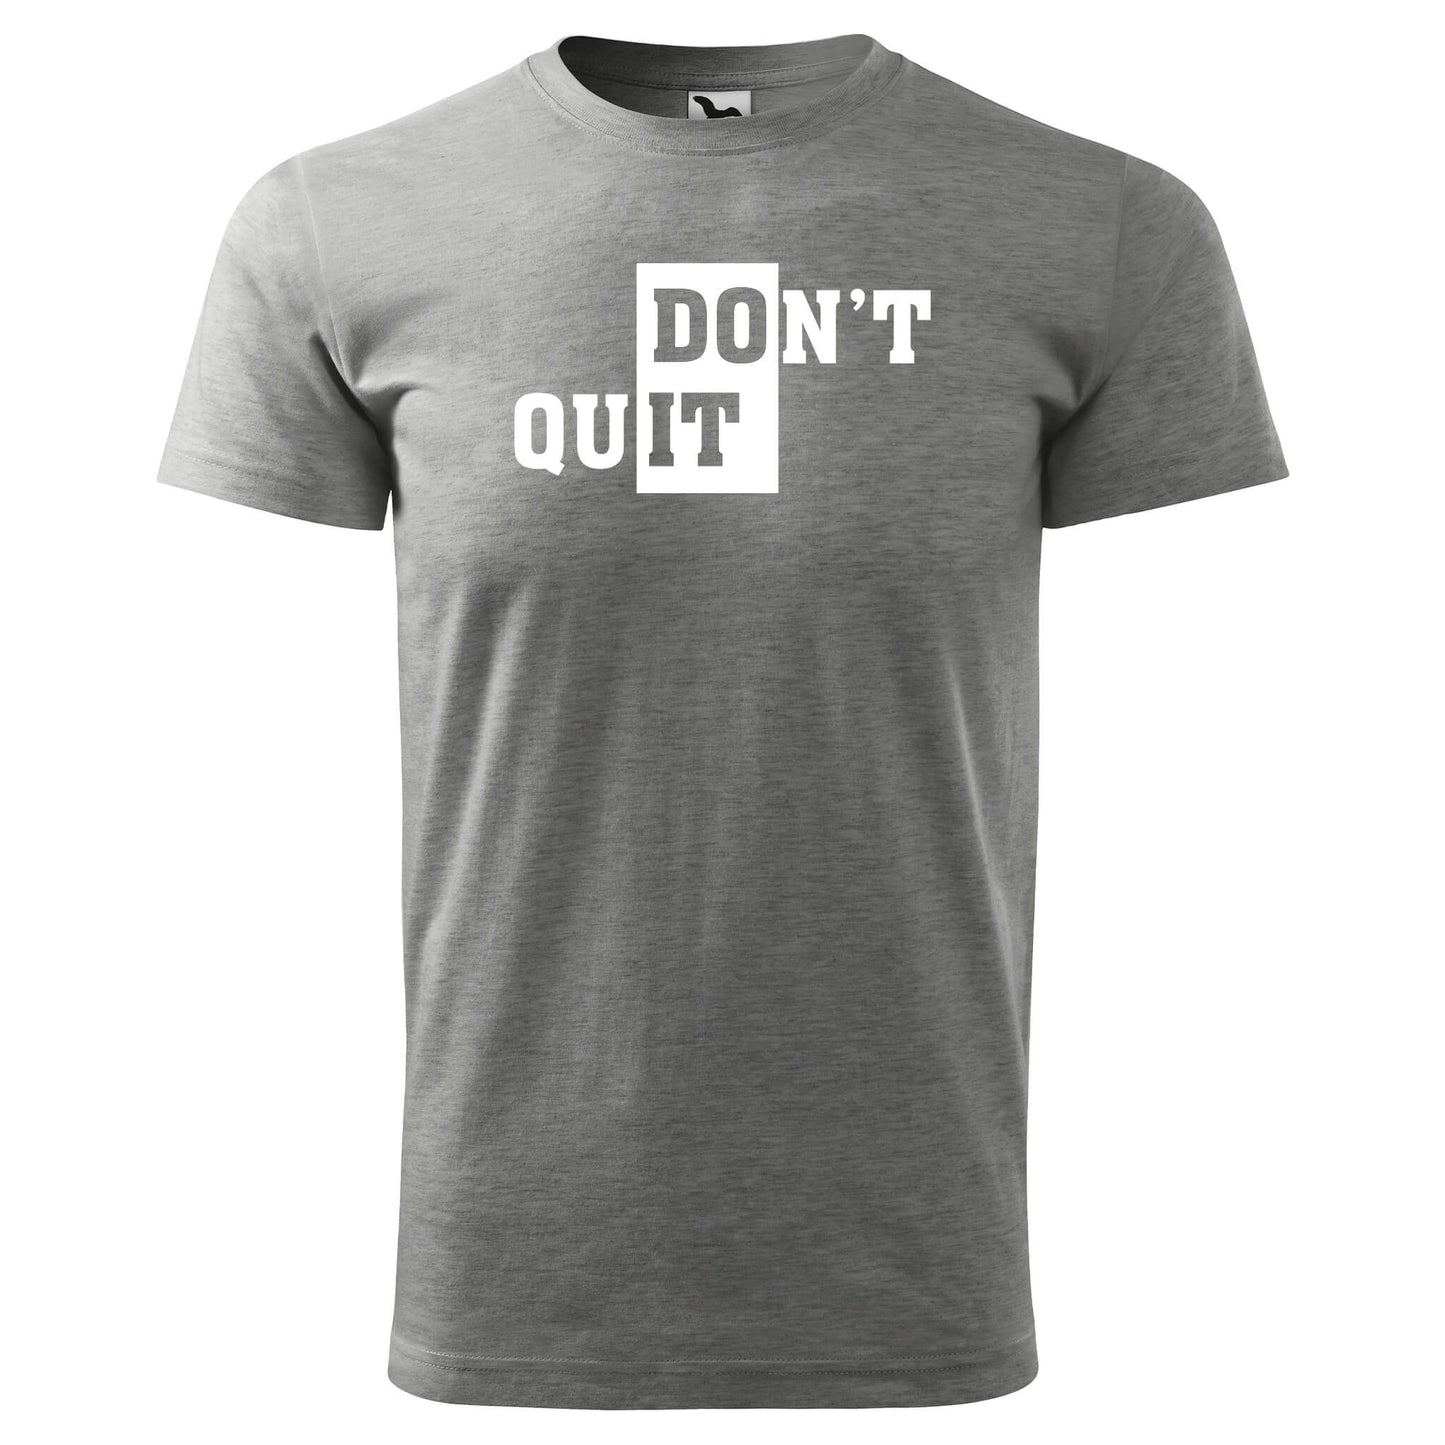 T-shirt - DOn't quIT - rvdesignprint